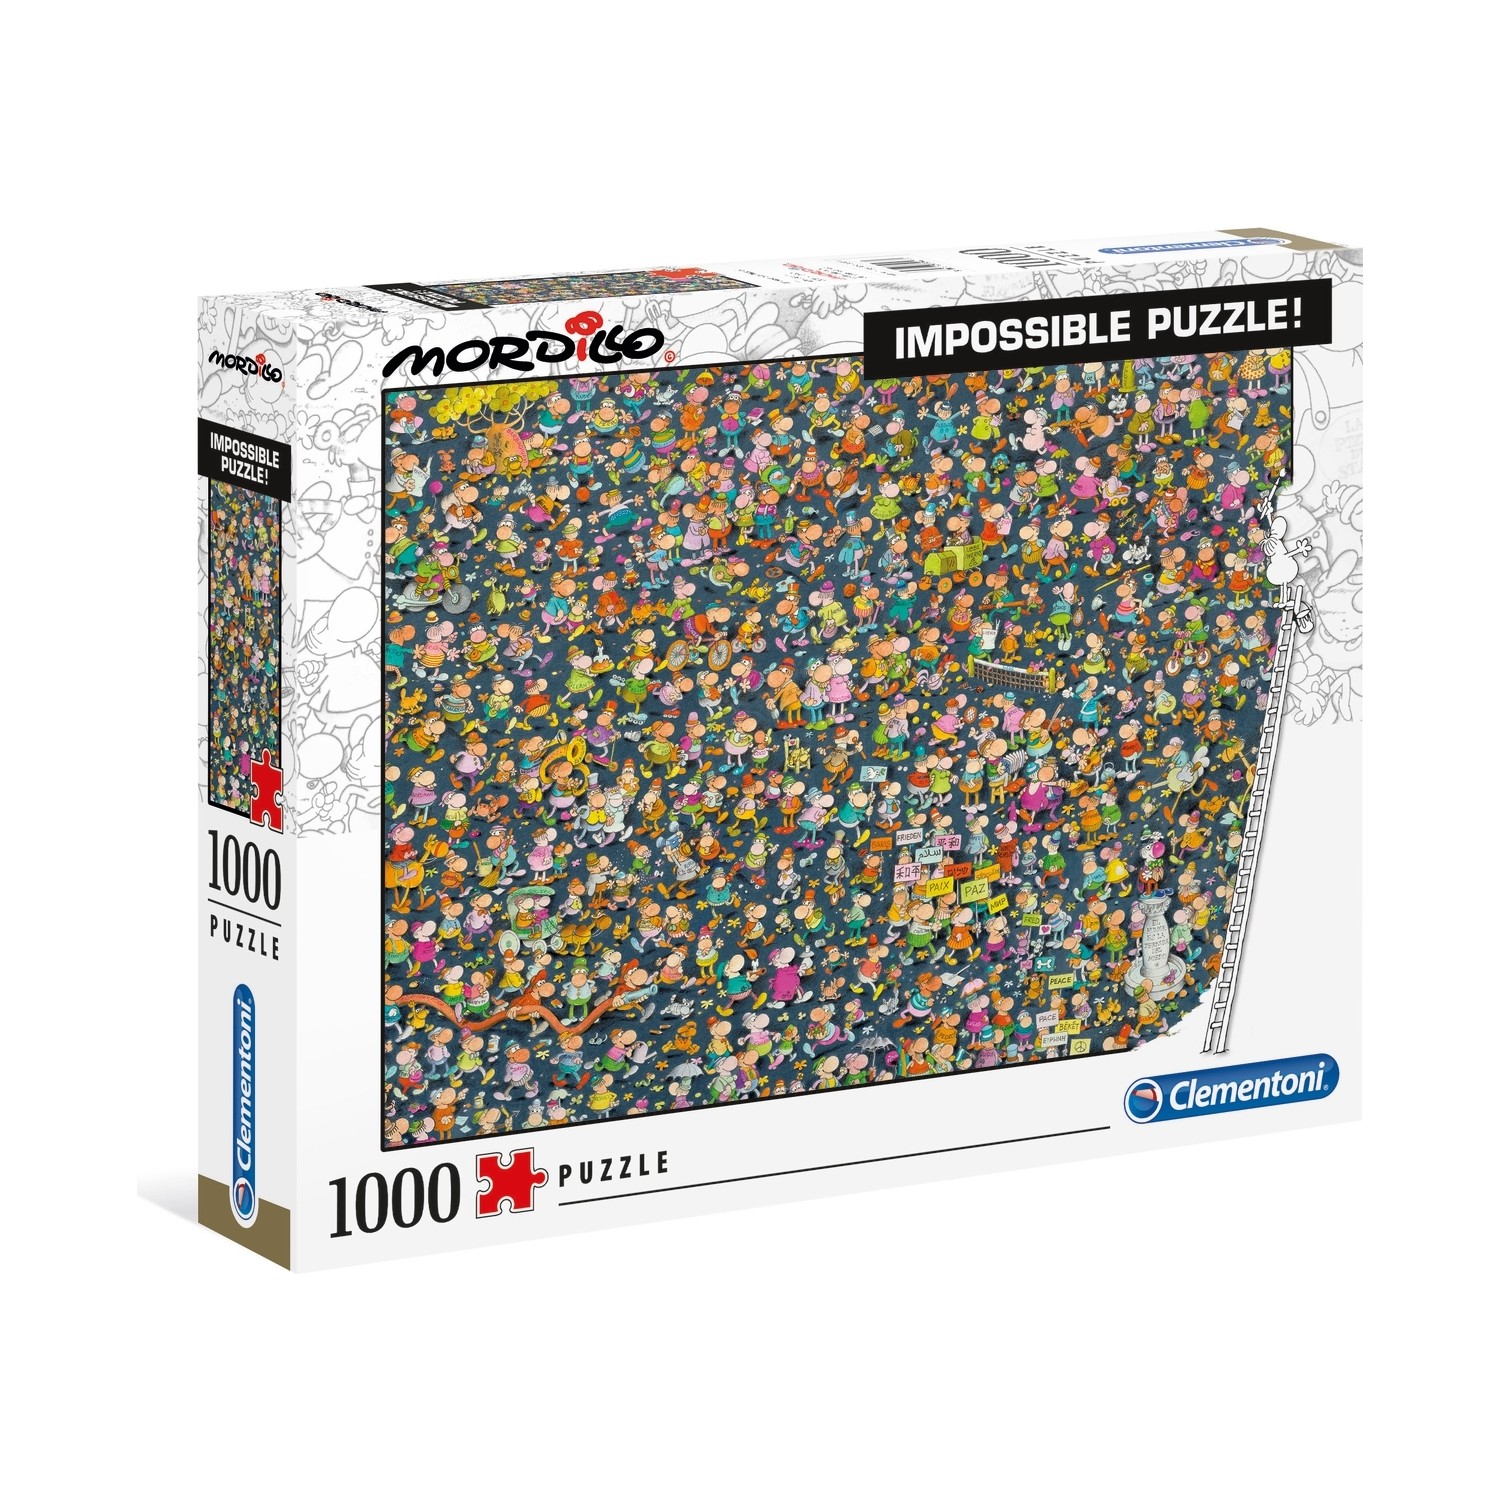 Clementoni 1000 Parça Mordillo Impossible Puzzle Fiyatı